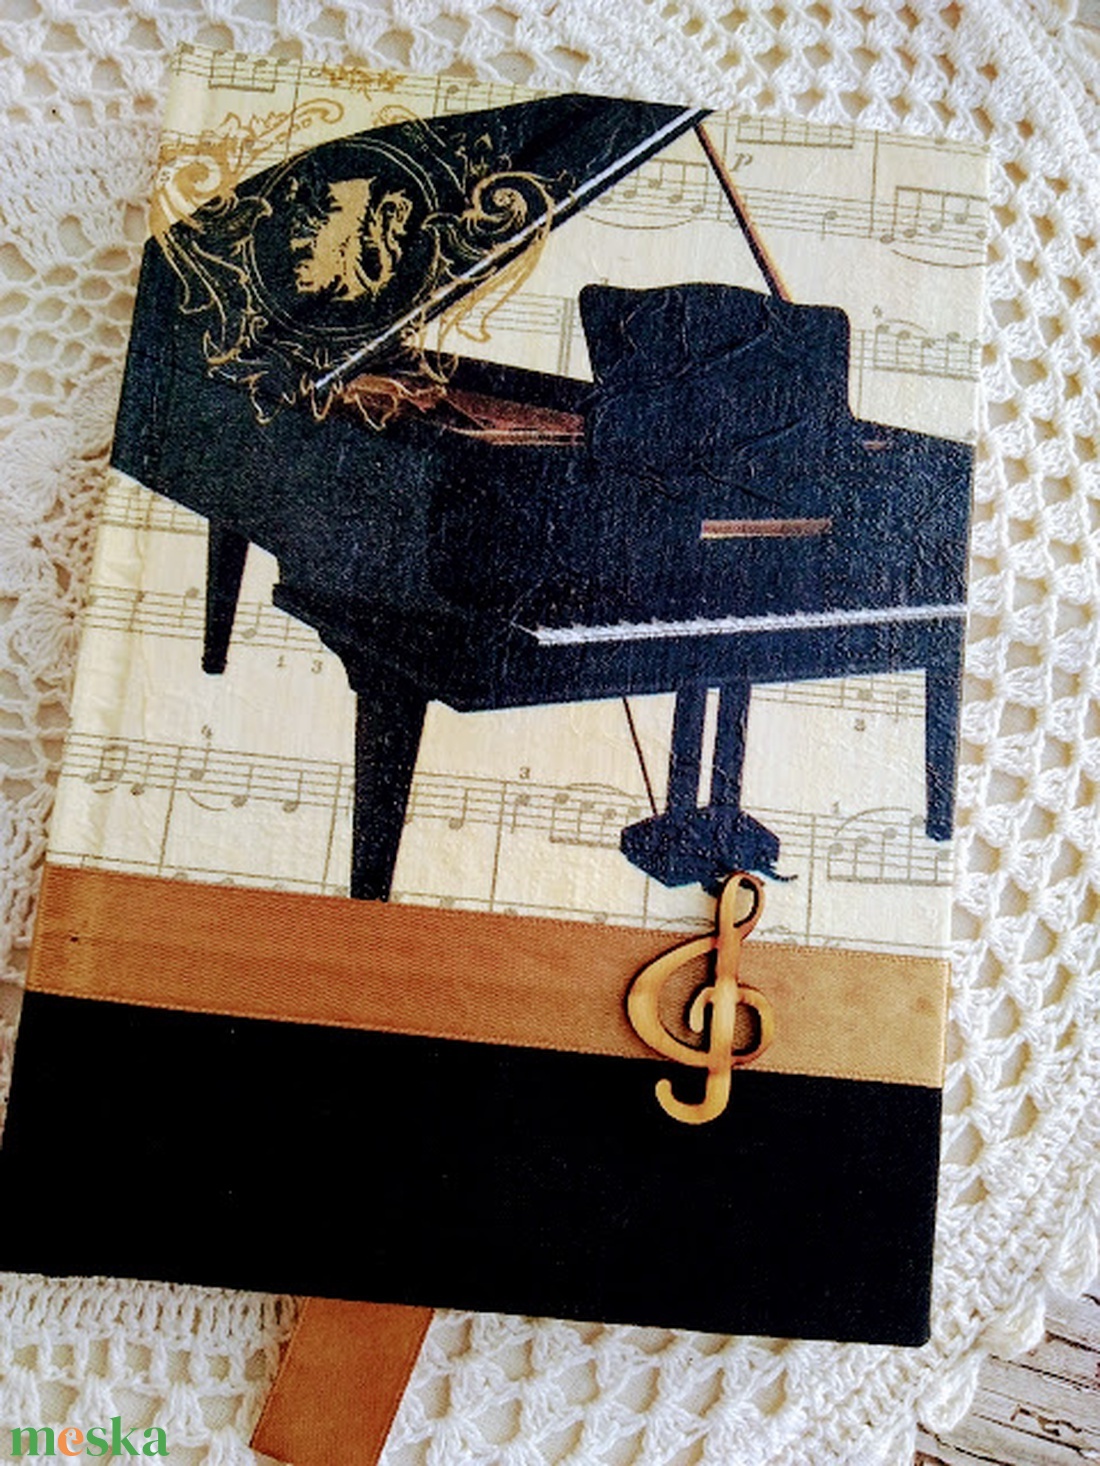 Zongorás emlékkönyv - könyv & zene - könyv - Meska.hu